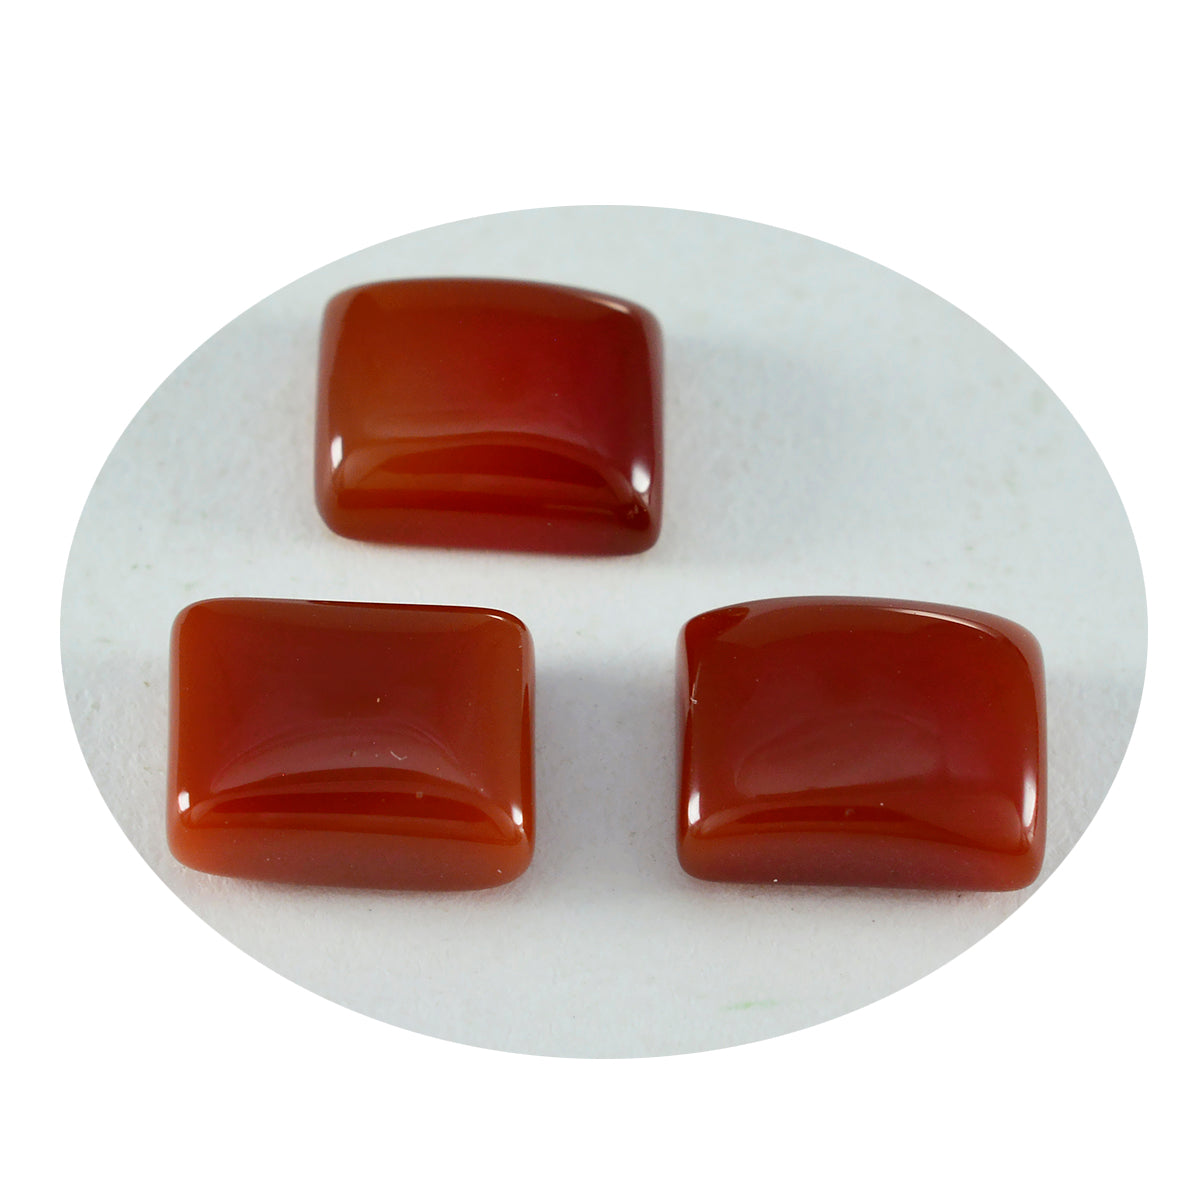 riyogems 1pc cabochon di onice rosso 10x14 mm forma ottagonale gemma sfusa di qualità A1